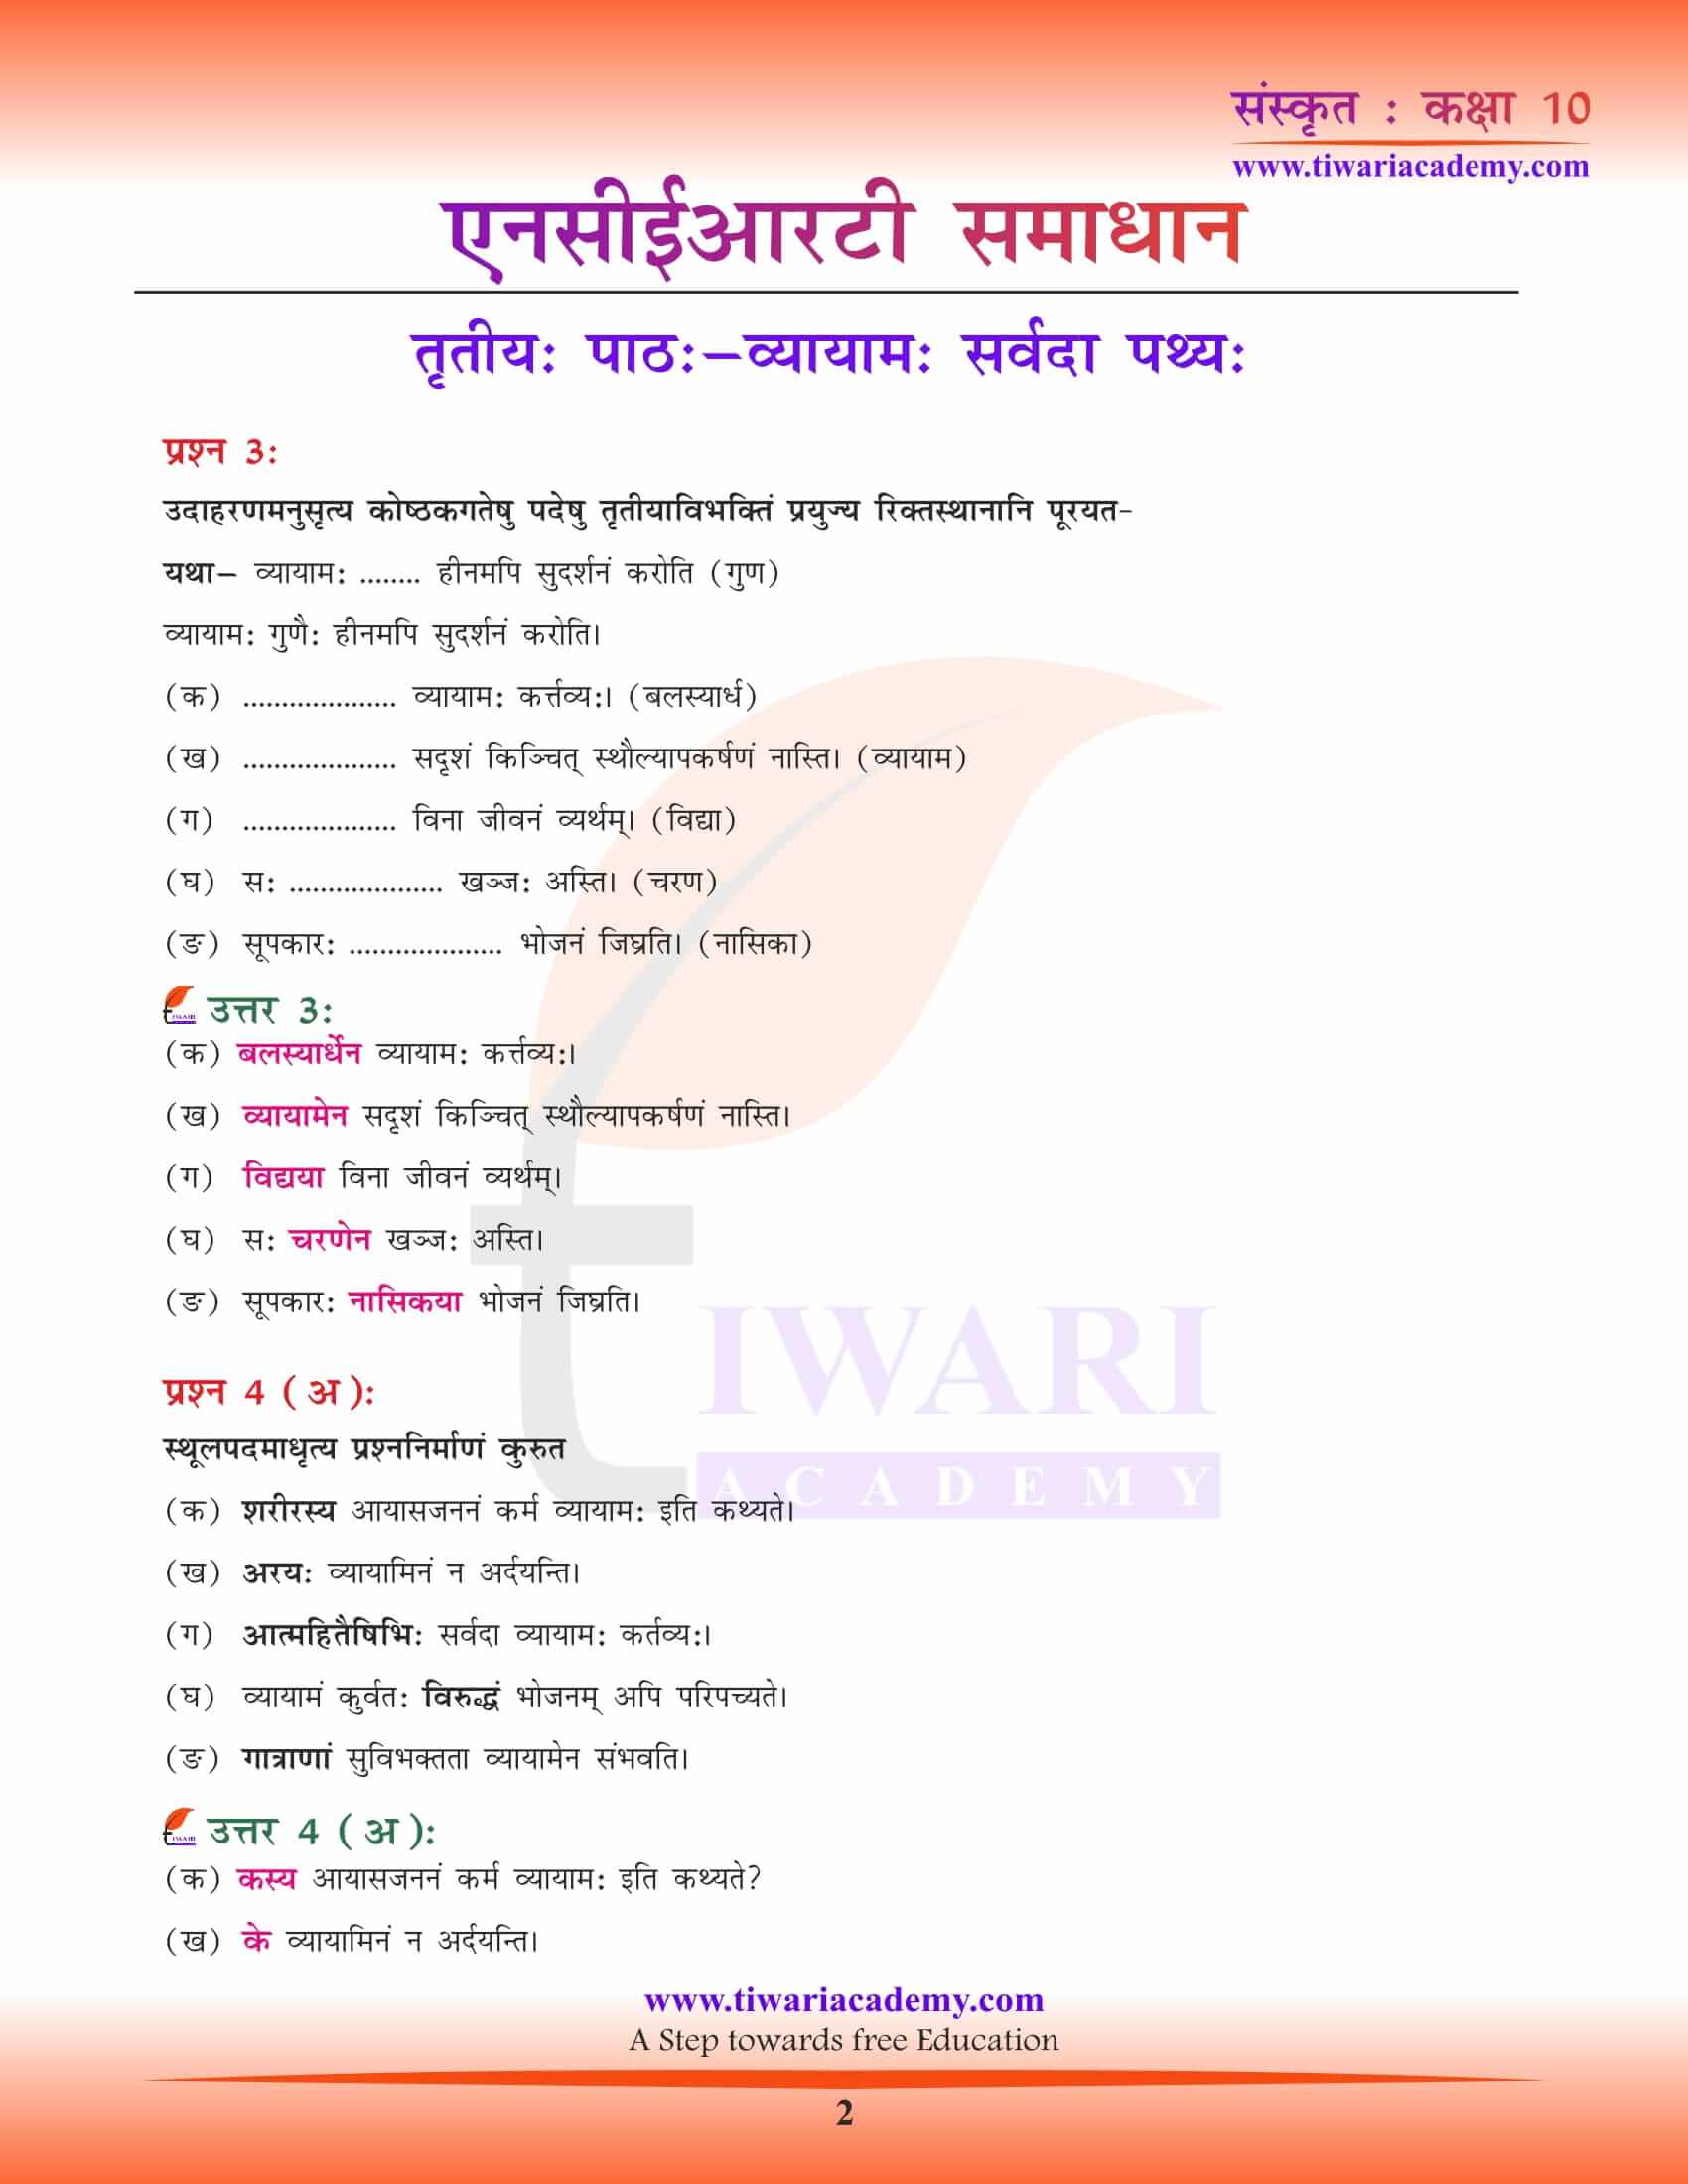 NCERT Solutions for Class 10 Sanskrit Chapter 3 in PDF